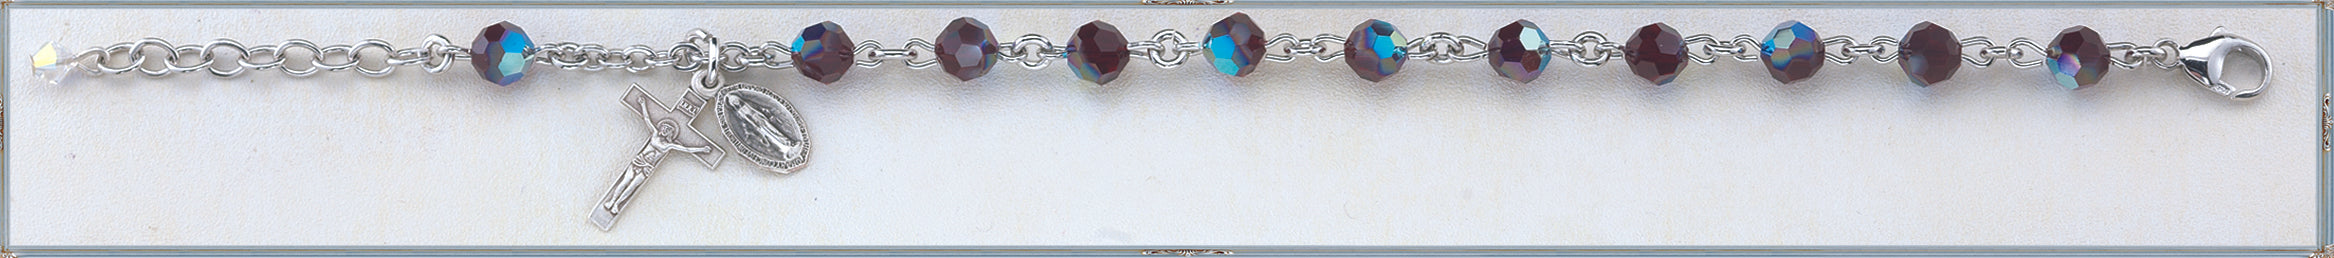 Garnet Round Faceted Swarovski Crystal Sterling Bracelet